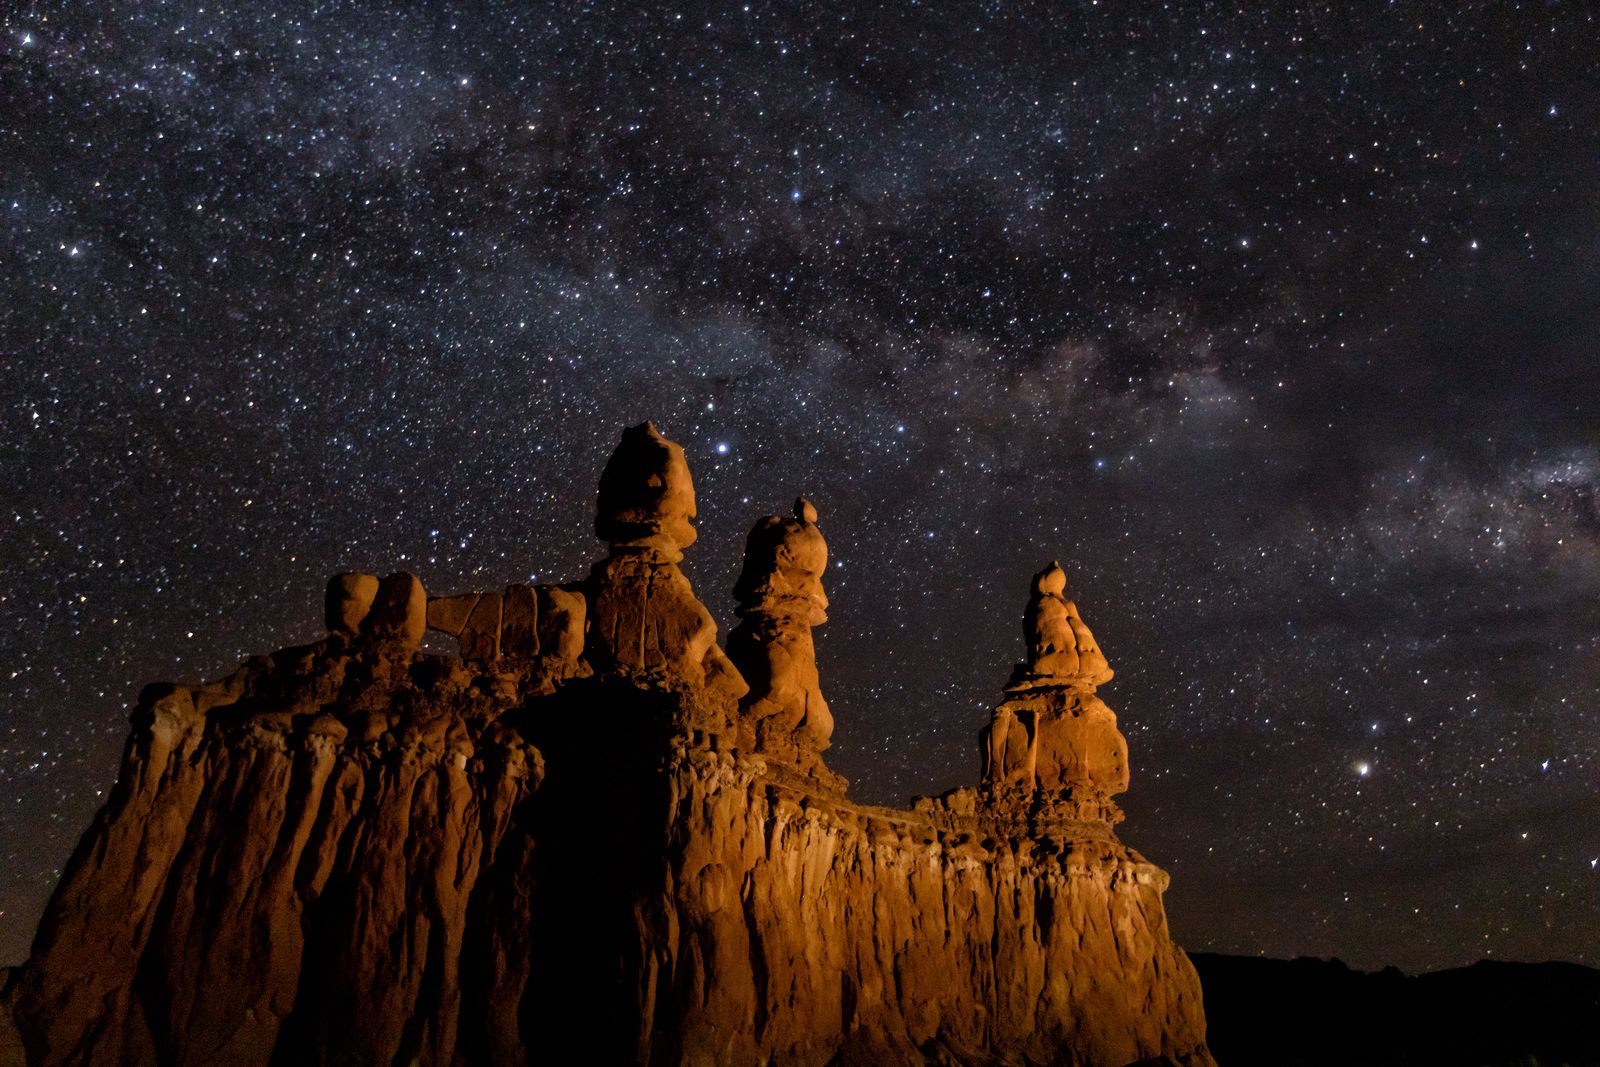 Utah’s ‘Dark Sky Month’ aims to showcase the stars [Video]